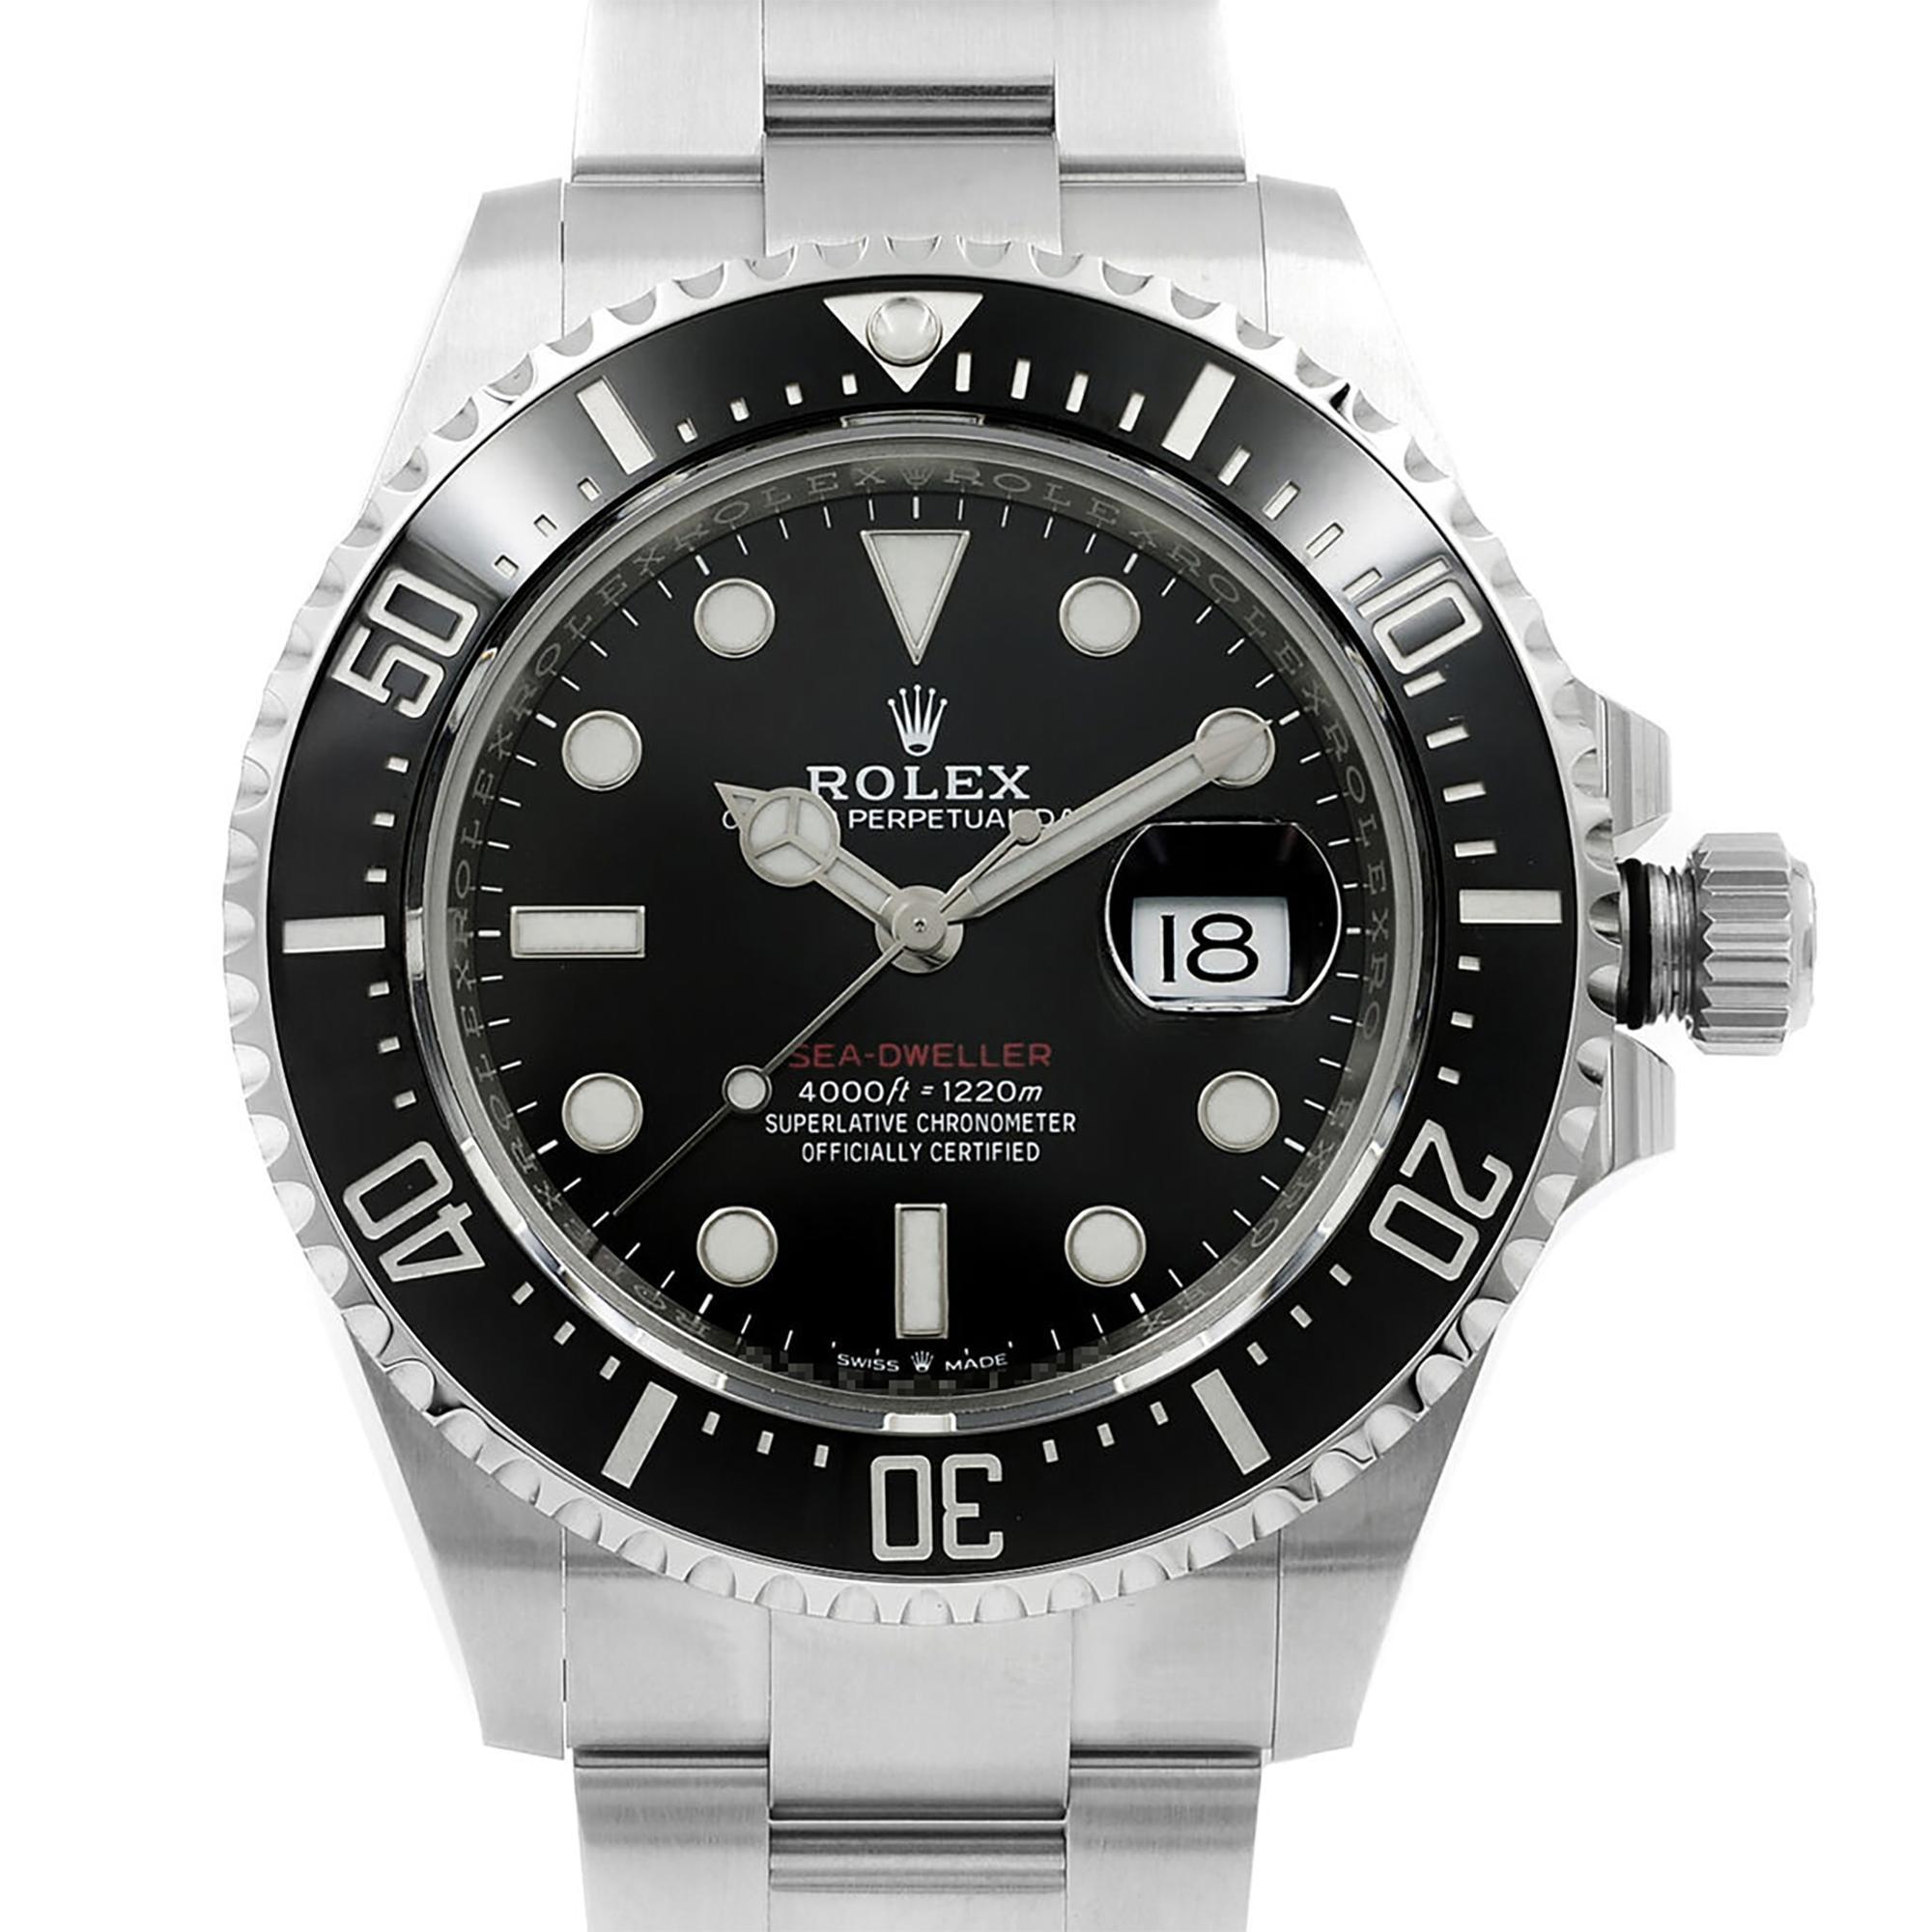 Ce modèle Rolex Sea-Dweller 126600, modèle d'affichage, est une belle montre pour homme qui est animée par un mouvement mécanique (automatique) et est présentée dans un boîtier en acier inoxydable. Il est doté d'un cadran de forme ronde, d'un